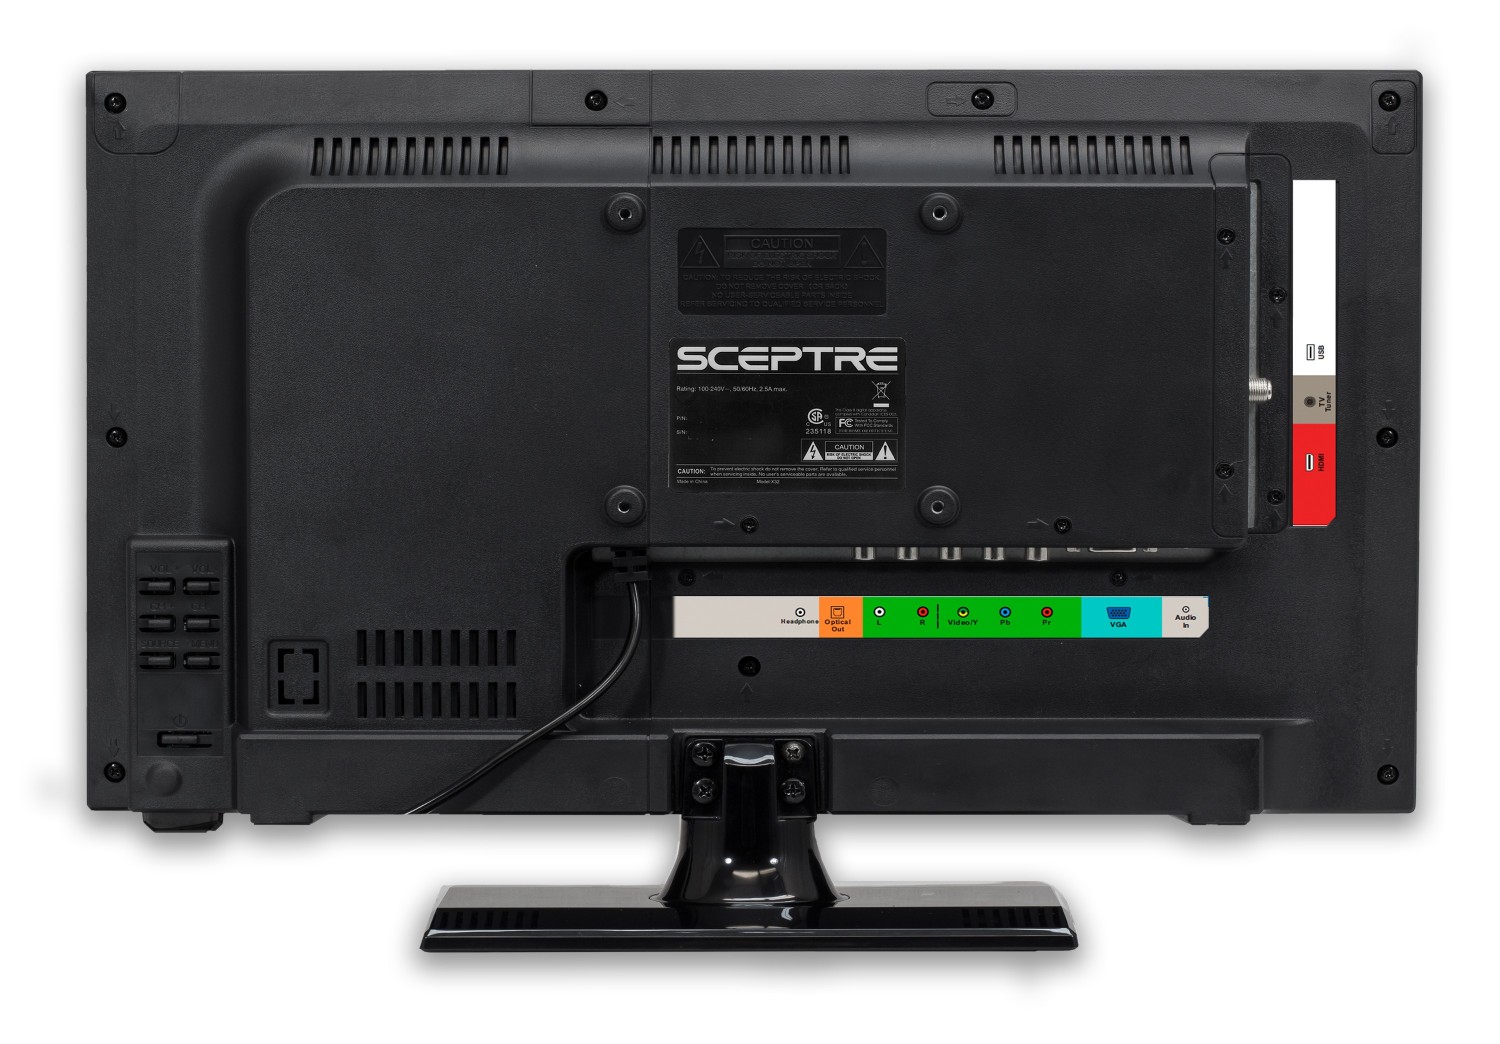 Machine Black 2020 New Sceptre E195BV-SR 19 Slim LED HDTV 720p with HDMI USB VGA Inputs 